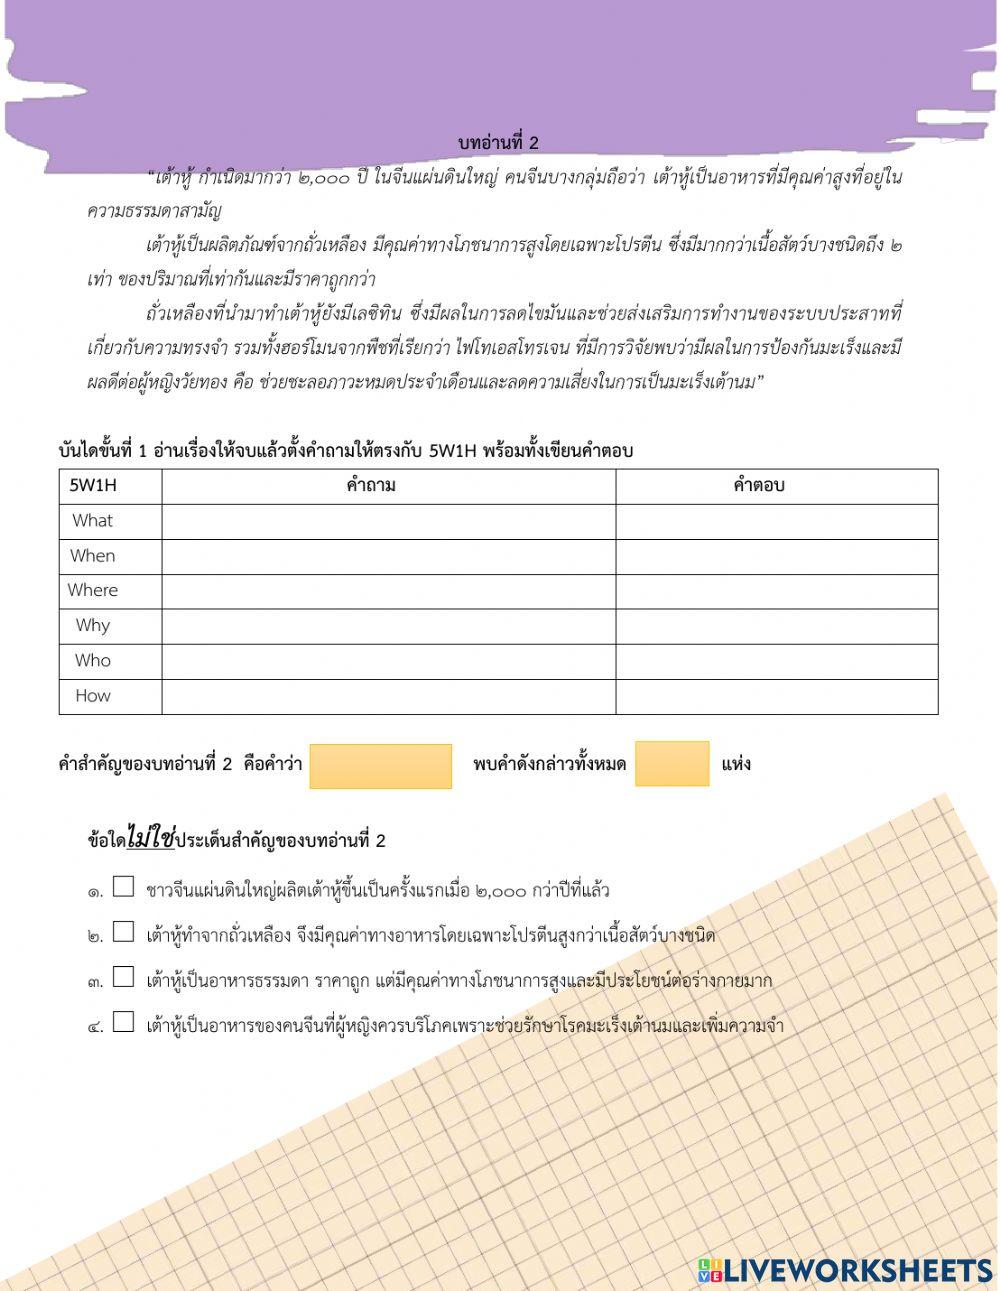 ข้อสอบกลางภาคภาษาไทย